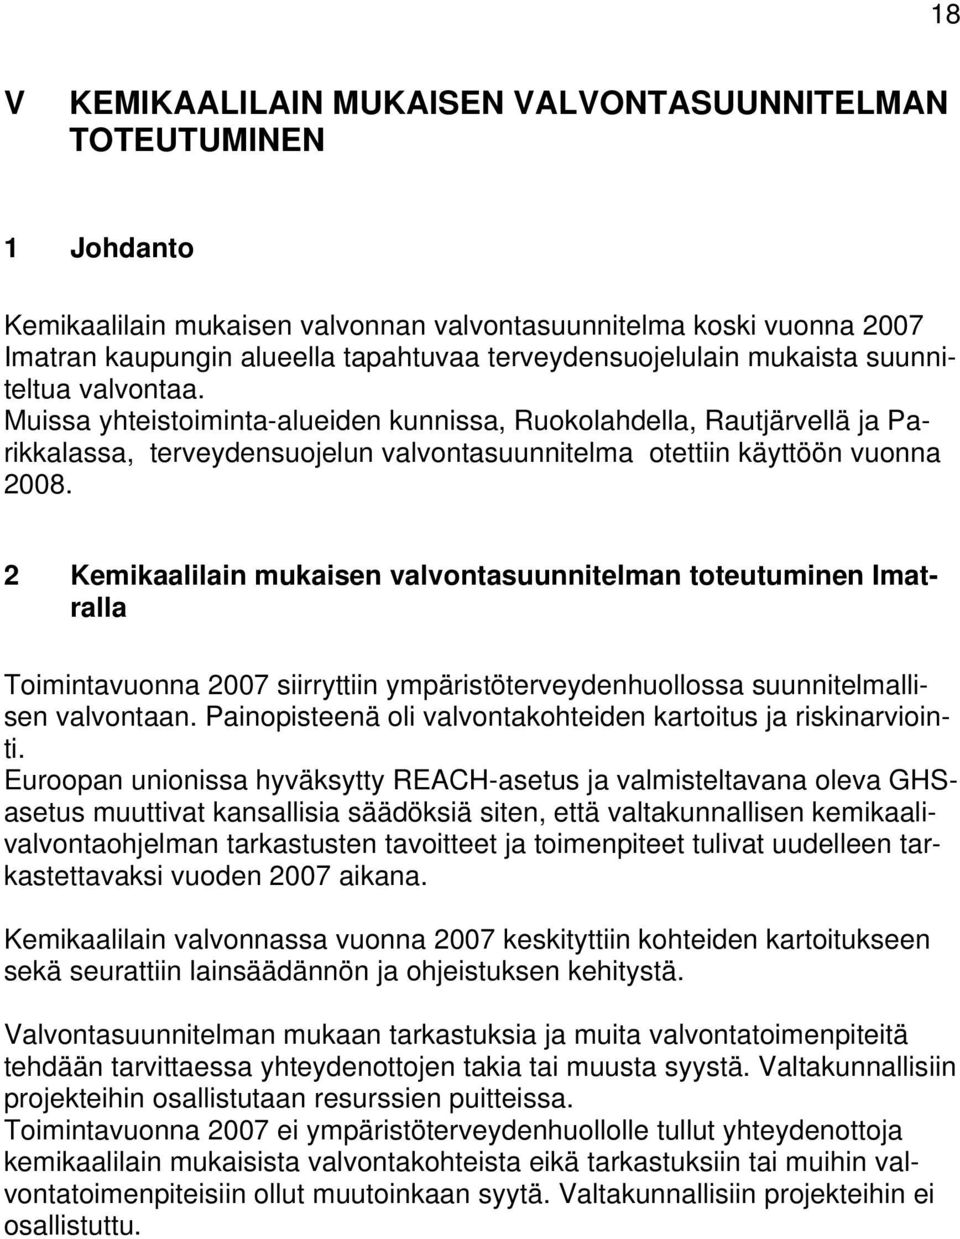 Muissa yhteistoimintaalueiden kunnissa, Ruokolahdella, Rautjärvellä ja Parikkalassa, terveydensuojelun valvontasuunnitelma otettiin käyttöön vuonna 2008.